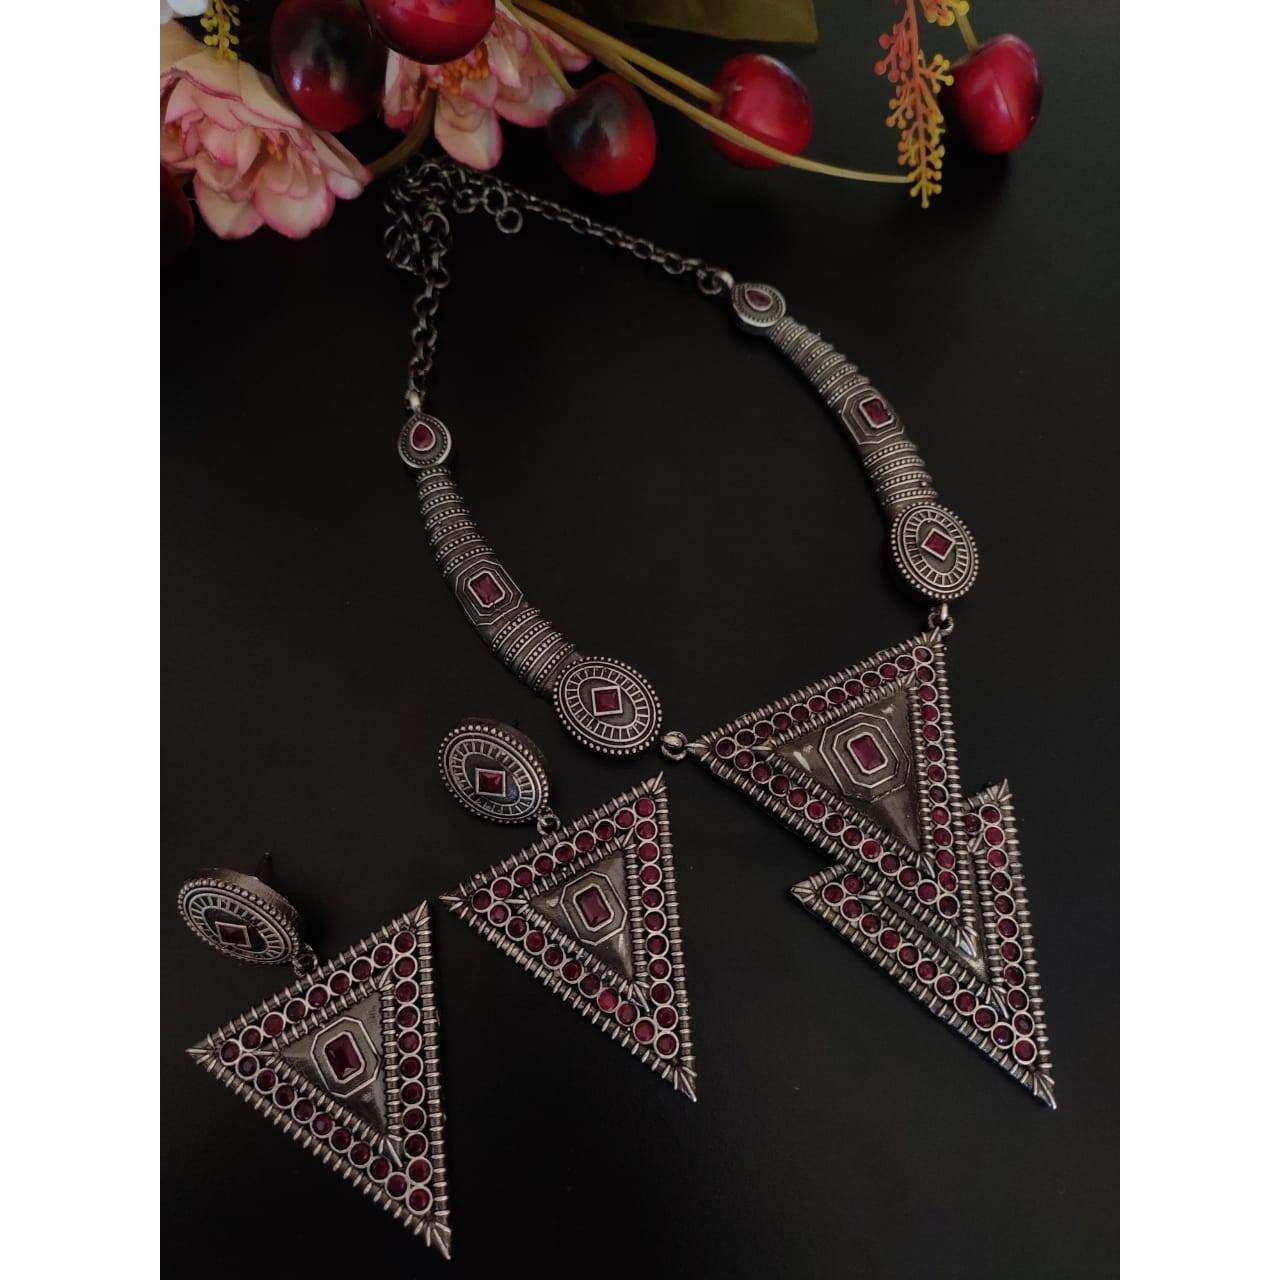 SLA Silver Oxidized Necklace Set, Trendy Indian Jewellery Set, Boho Tribal Fashion Jewelry, Indian Oxidized Jewelry Set, Oxidised Necklace